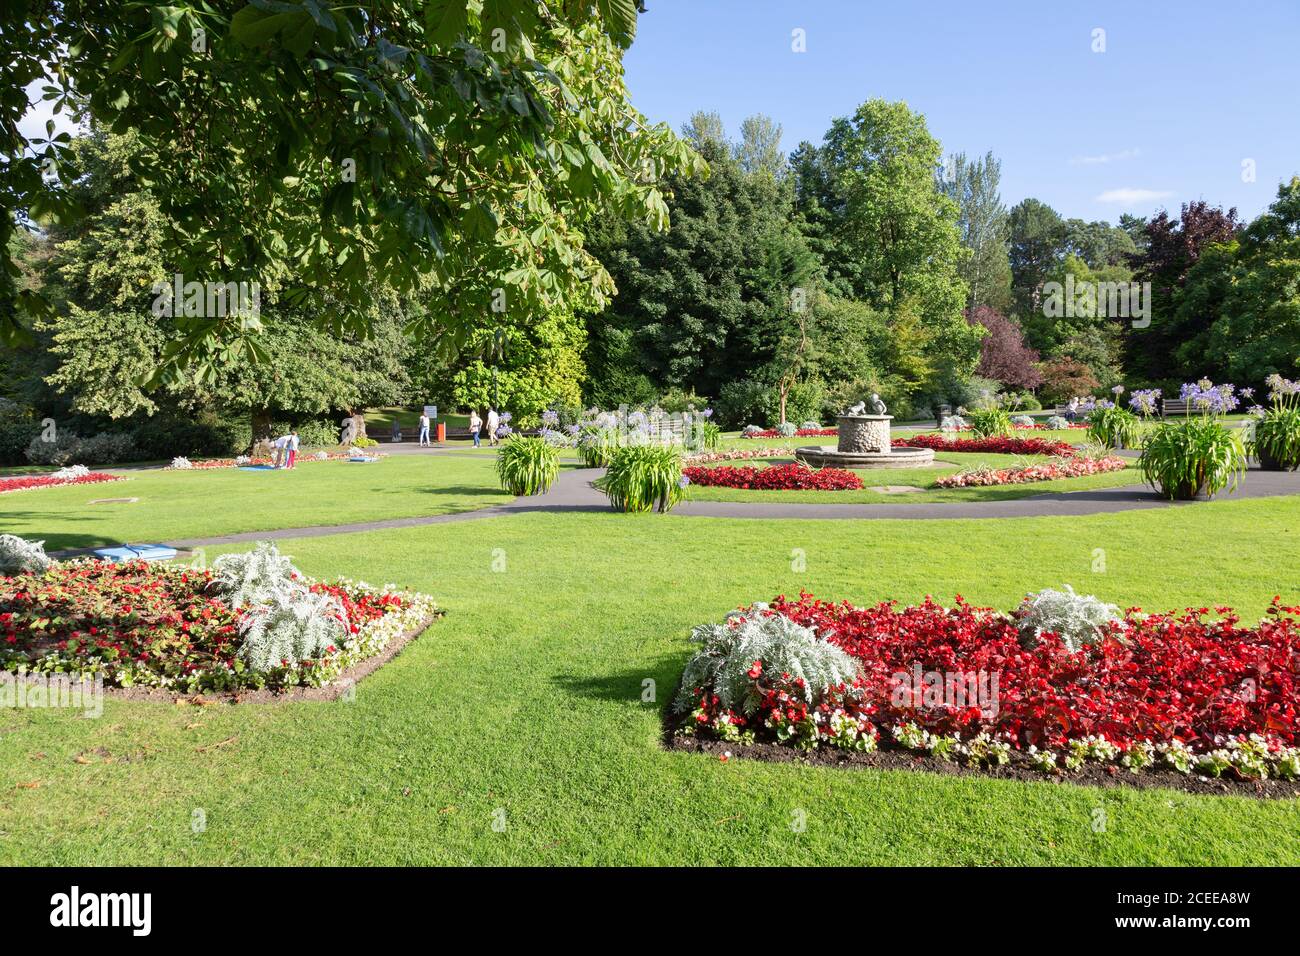 Valley Gardens Harrogate Yorkshire UK - Menschen zu Fuß zwischen den bunten Blumen im Sommer; Harrogate Yorkshire England Stockfoto